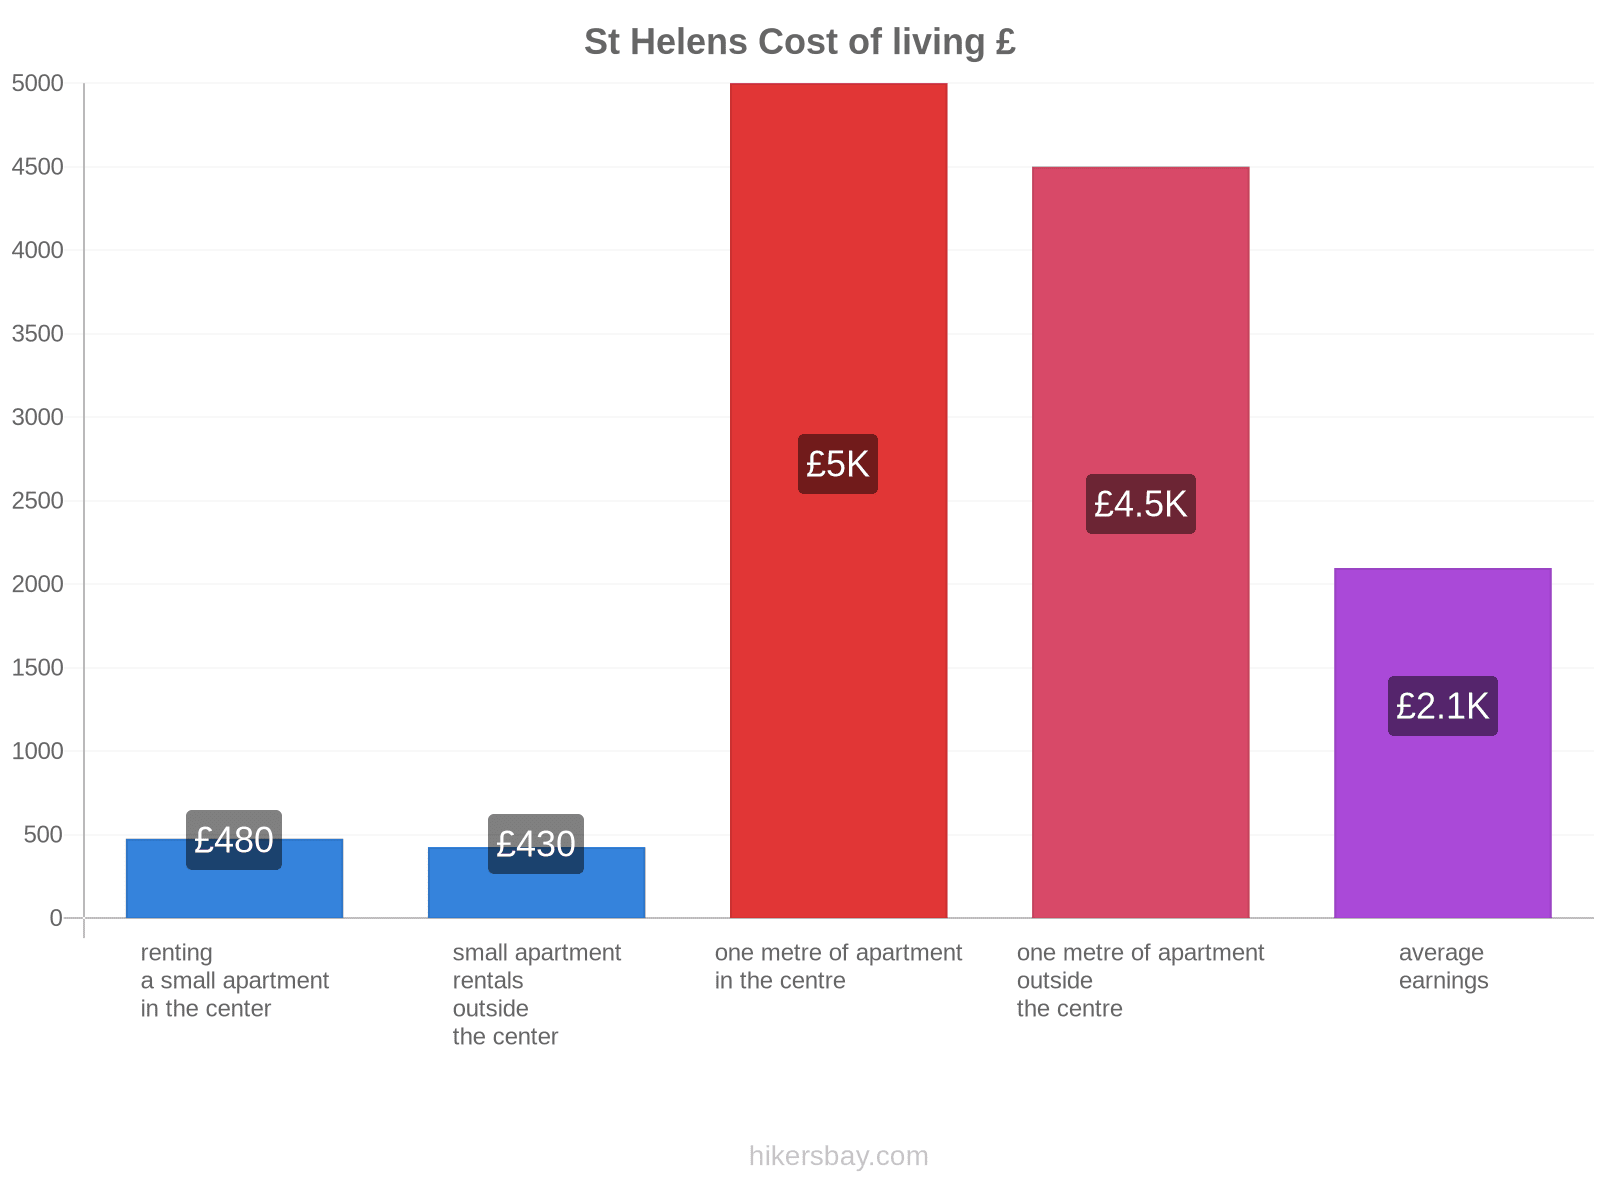 St Helens cost of living hikersbay.com